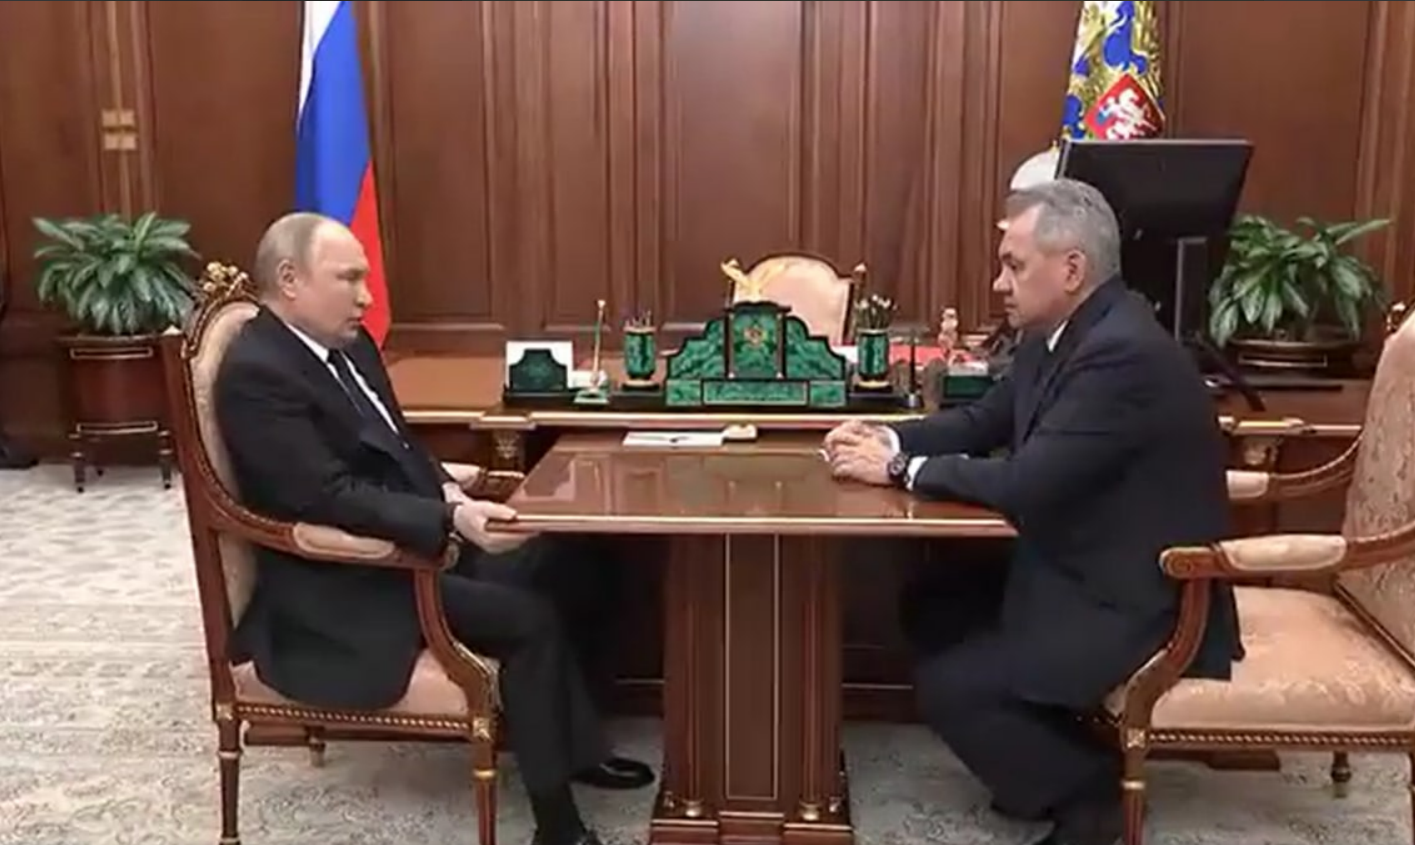 „Putyin nem engedi, hogy ukrán nácik, banderites (ukr. Бандерівці) és kábítószer-függők lefoglalják az asztalát”: az orosz elnök Sojguval folytatott találkozója alkalom volt a mémekre